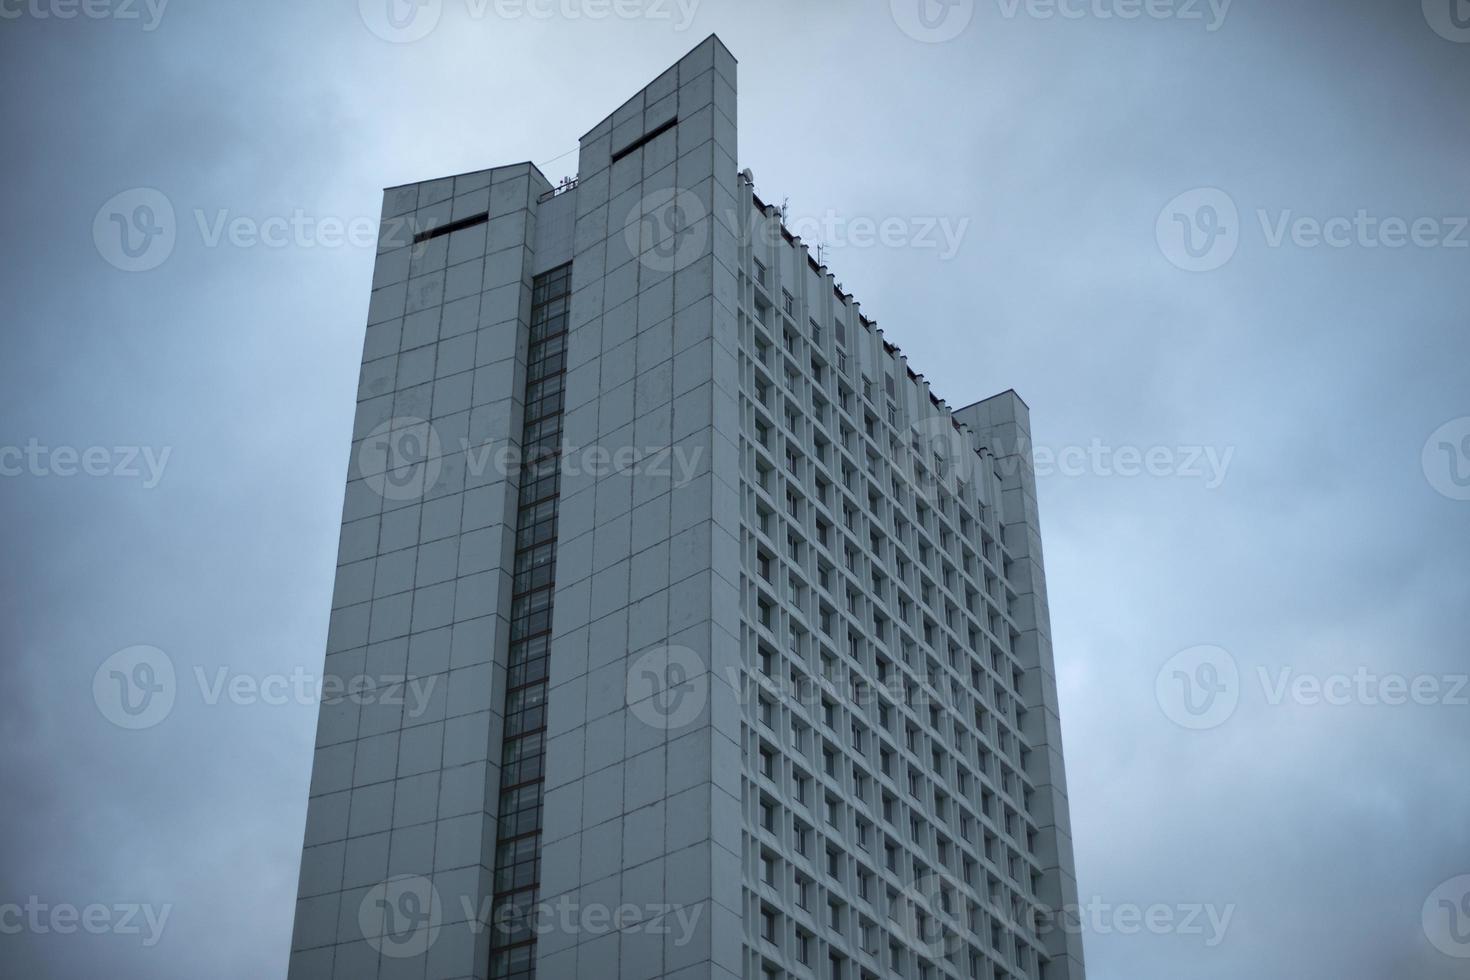 edificio alto. casa de oficinas foto